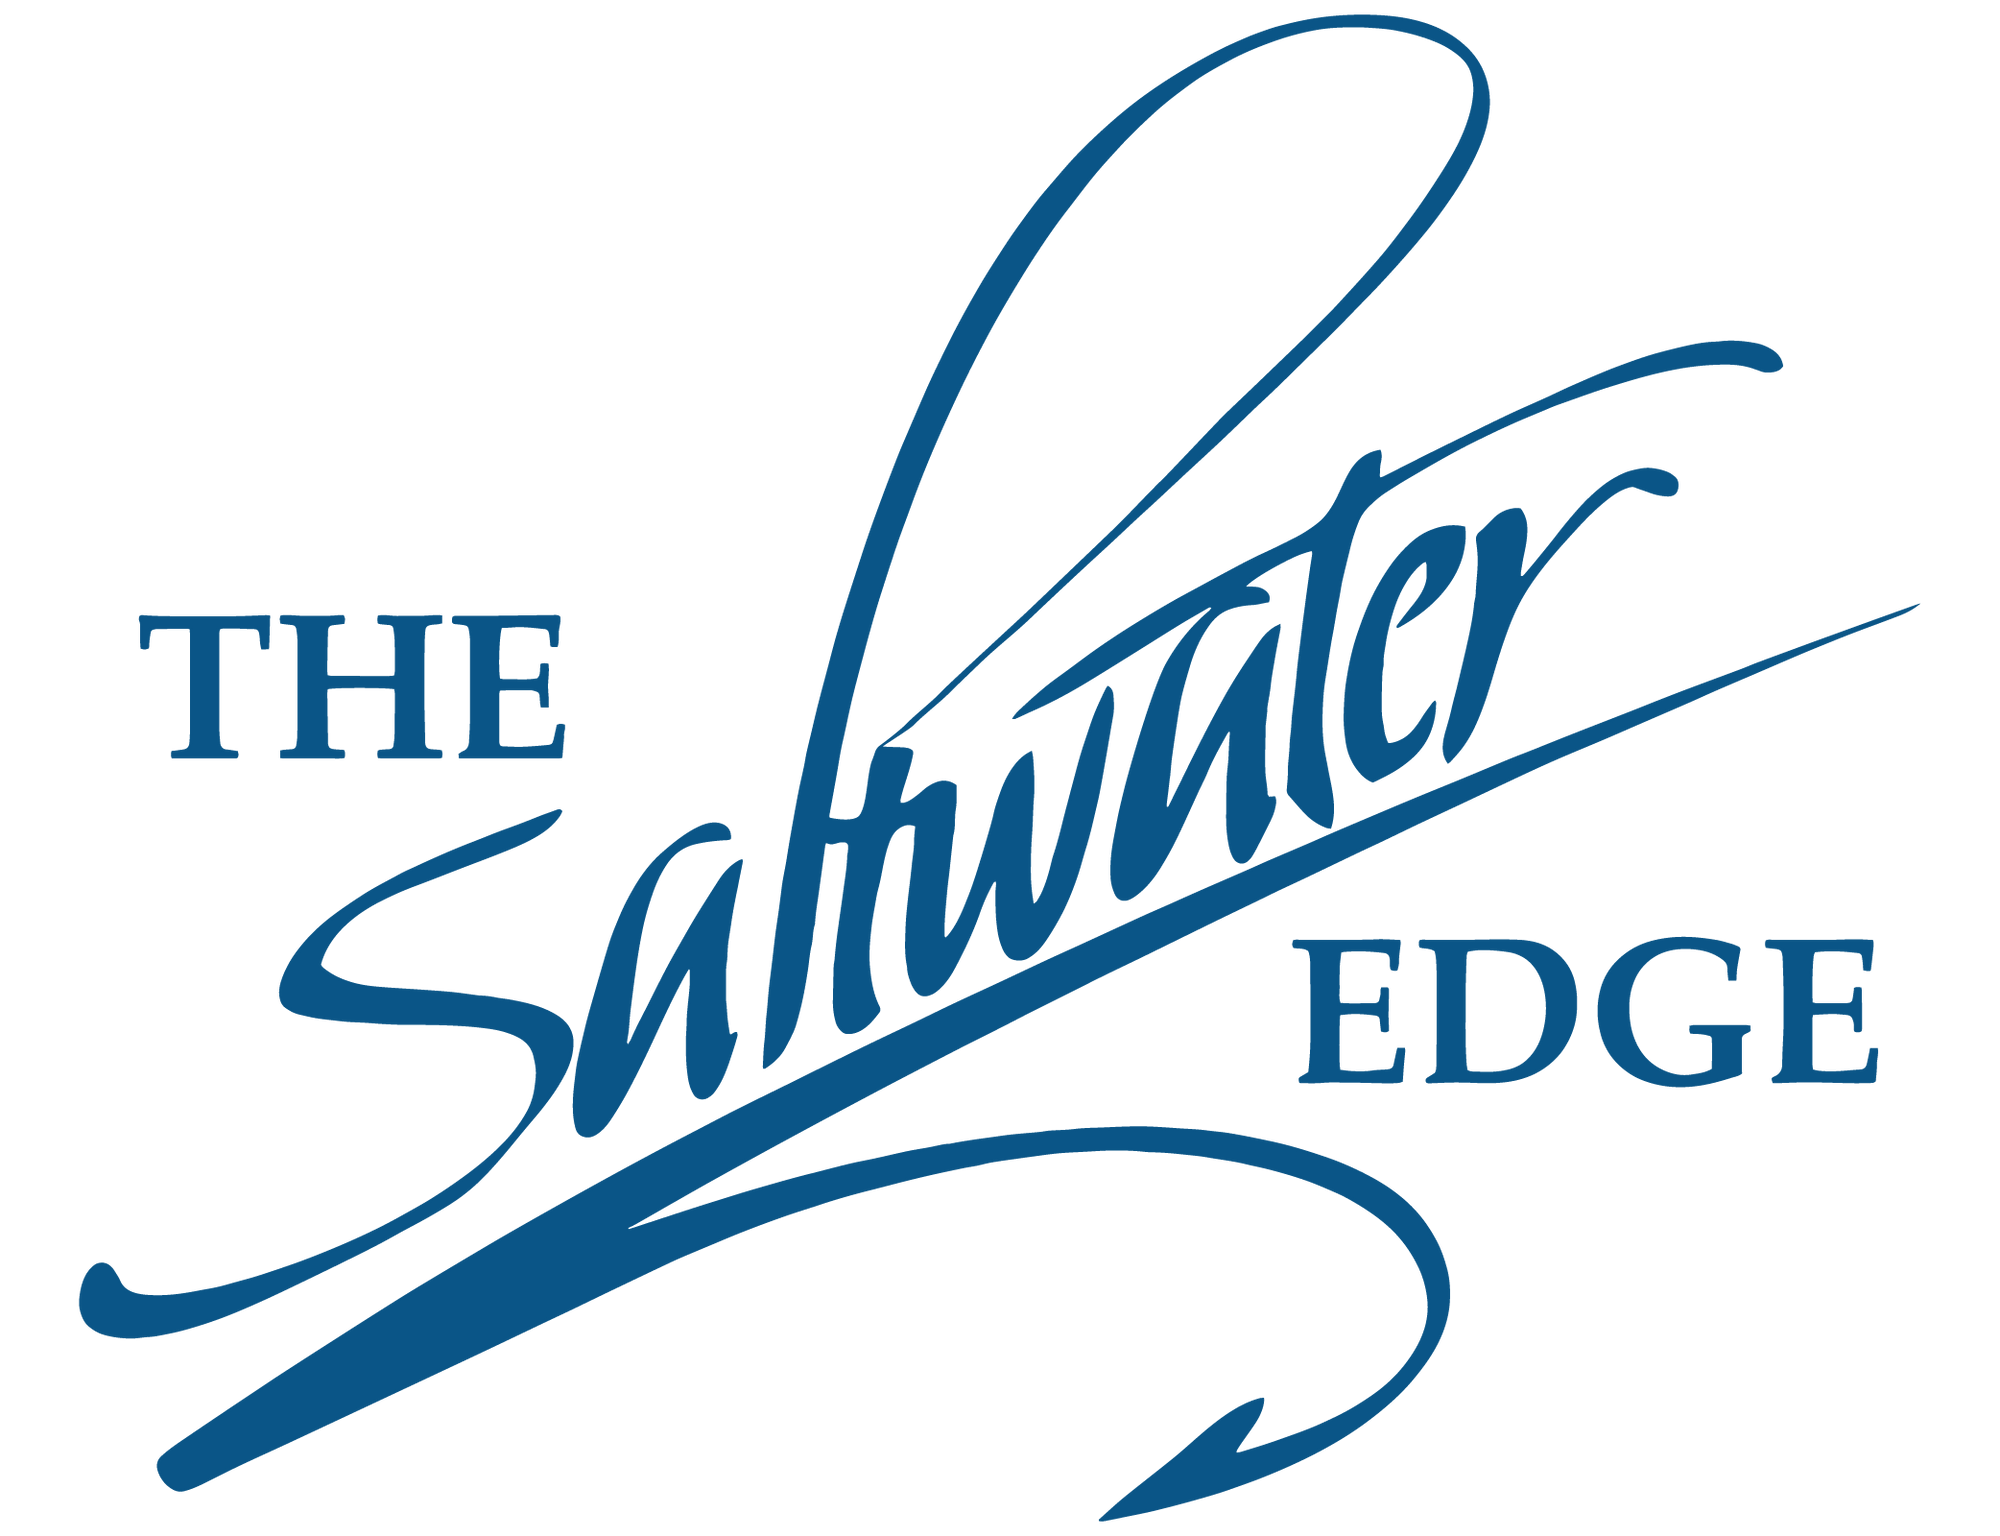 Van Staal VR Series Spinning Reels - The Saltwater Edge